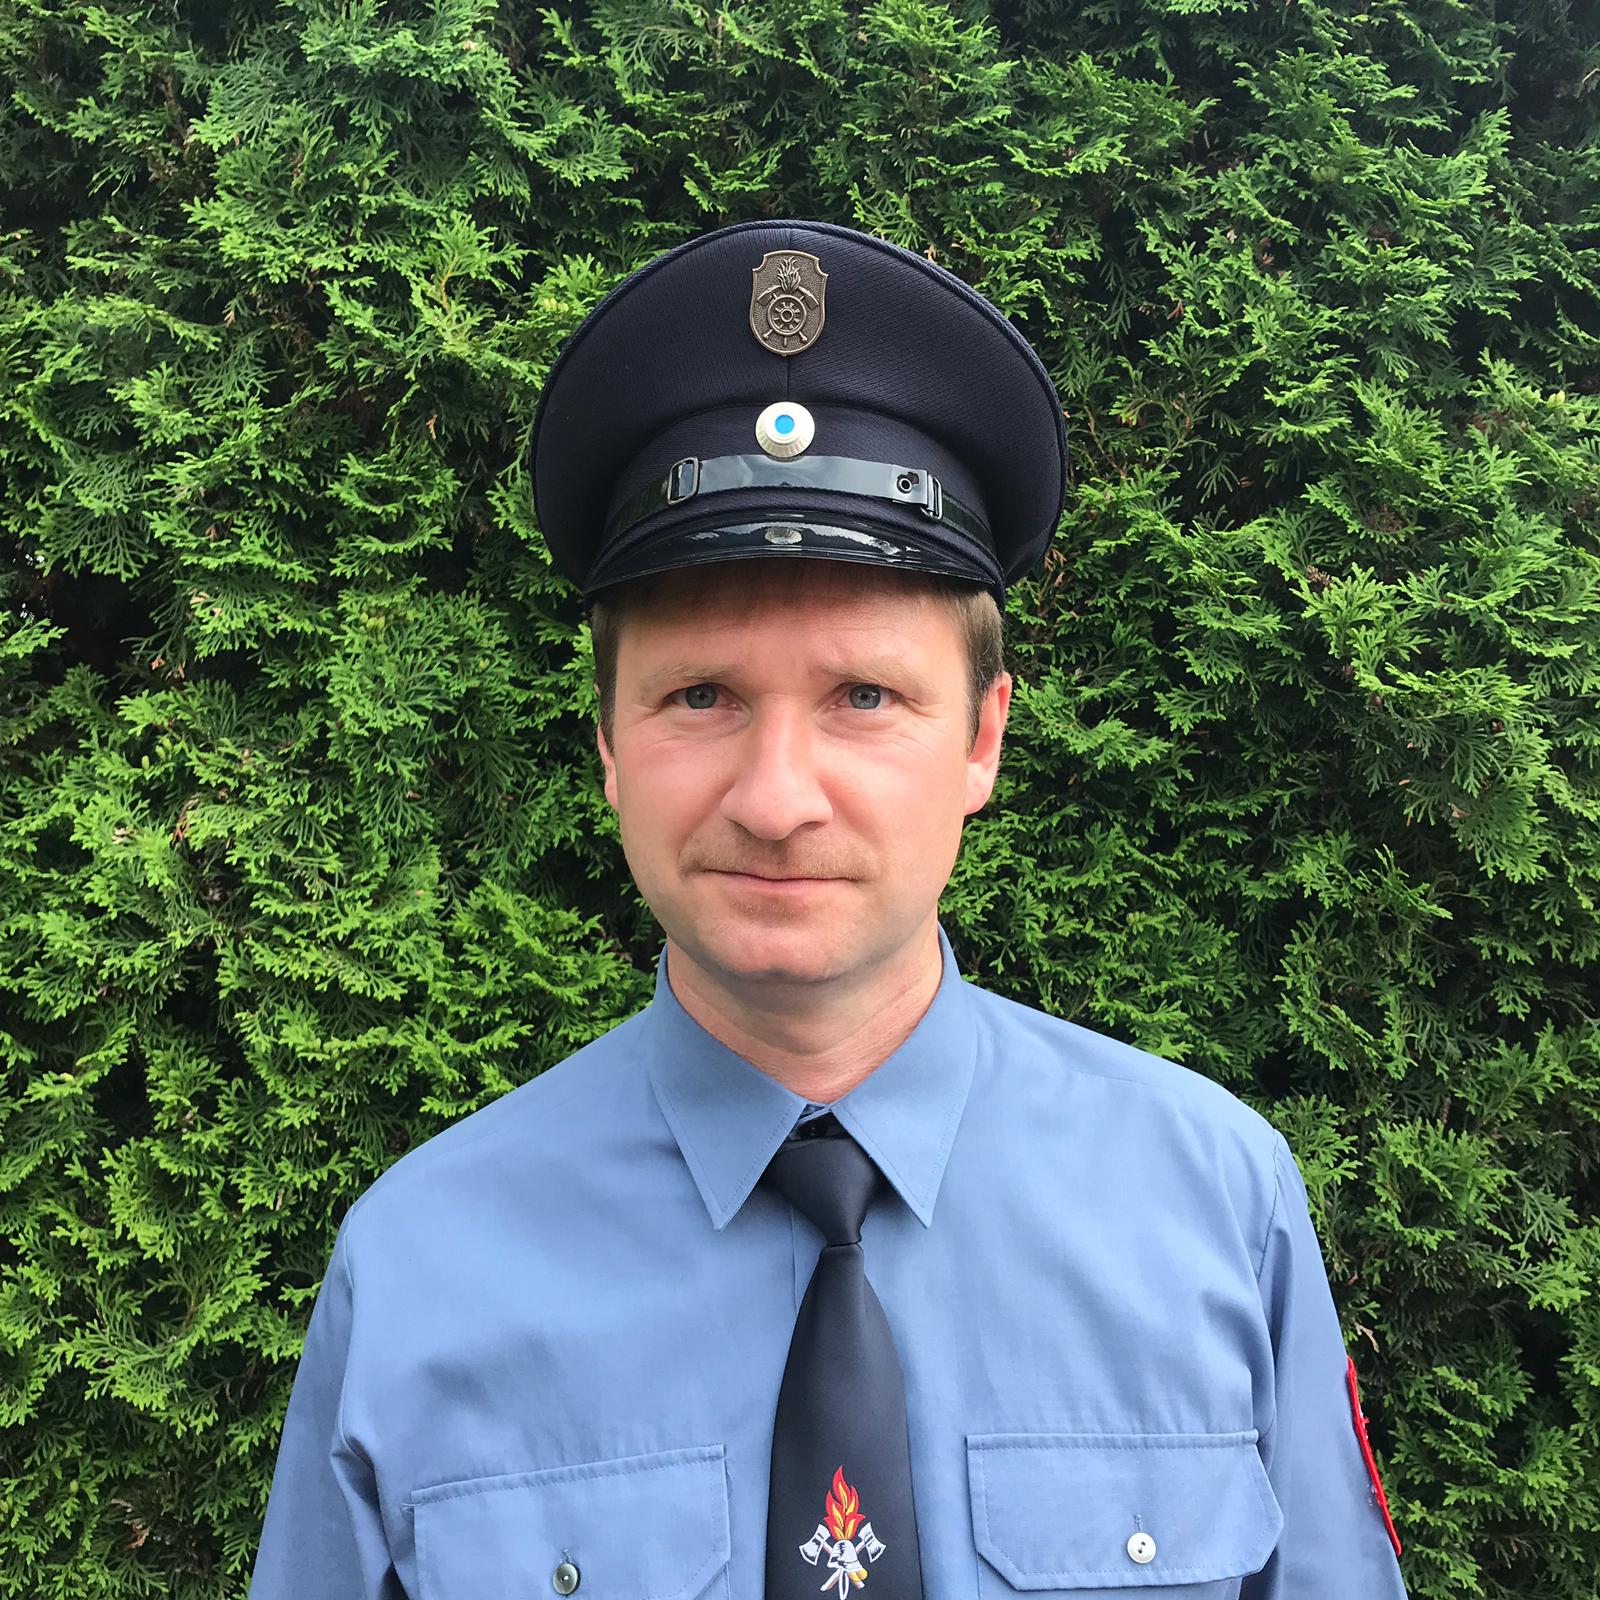 2. Vorsitzender, Vorstand Ulrich Grüner der Freiwilligen Feuerwehr Poppendorf im Ahorntal, Landkreis Bayreuth